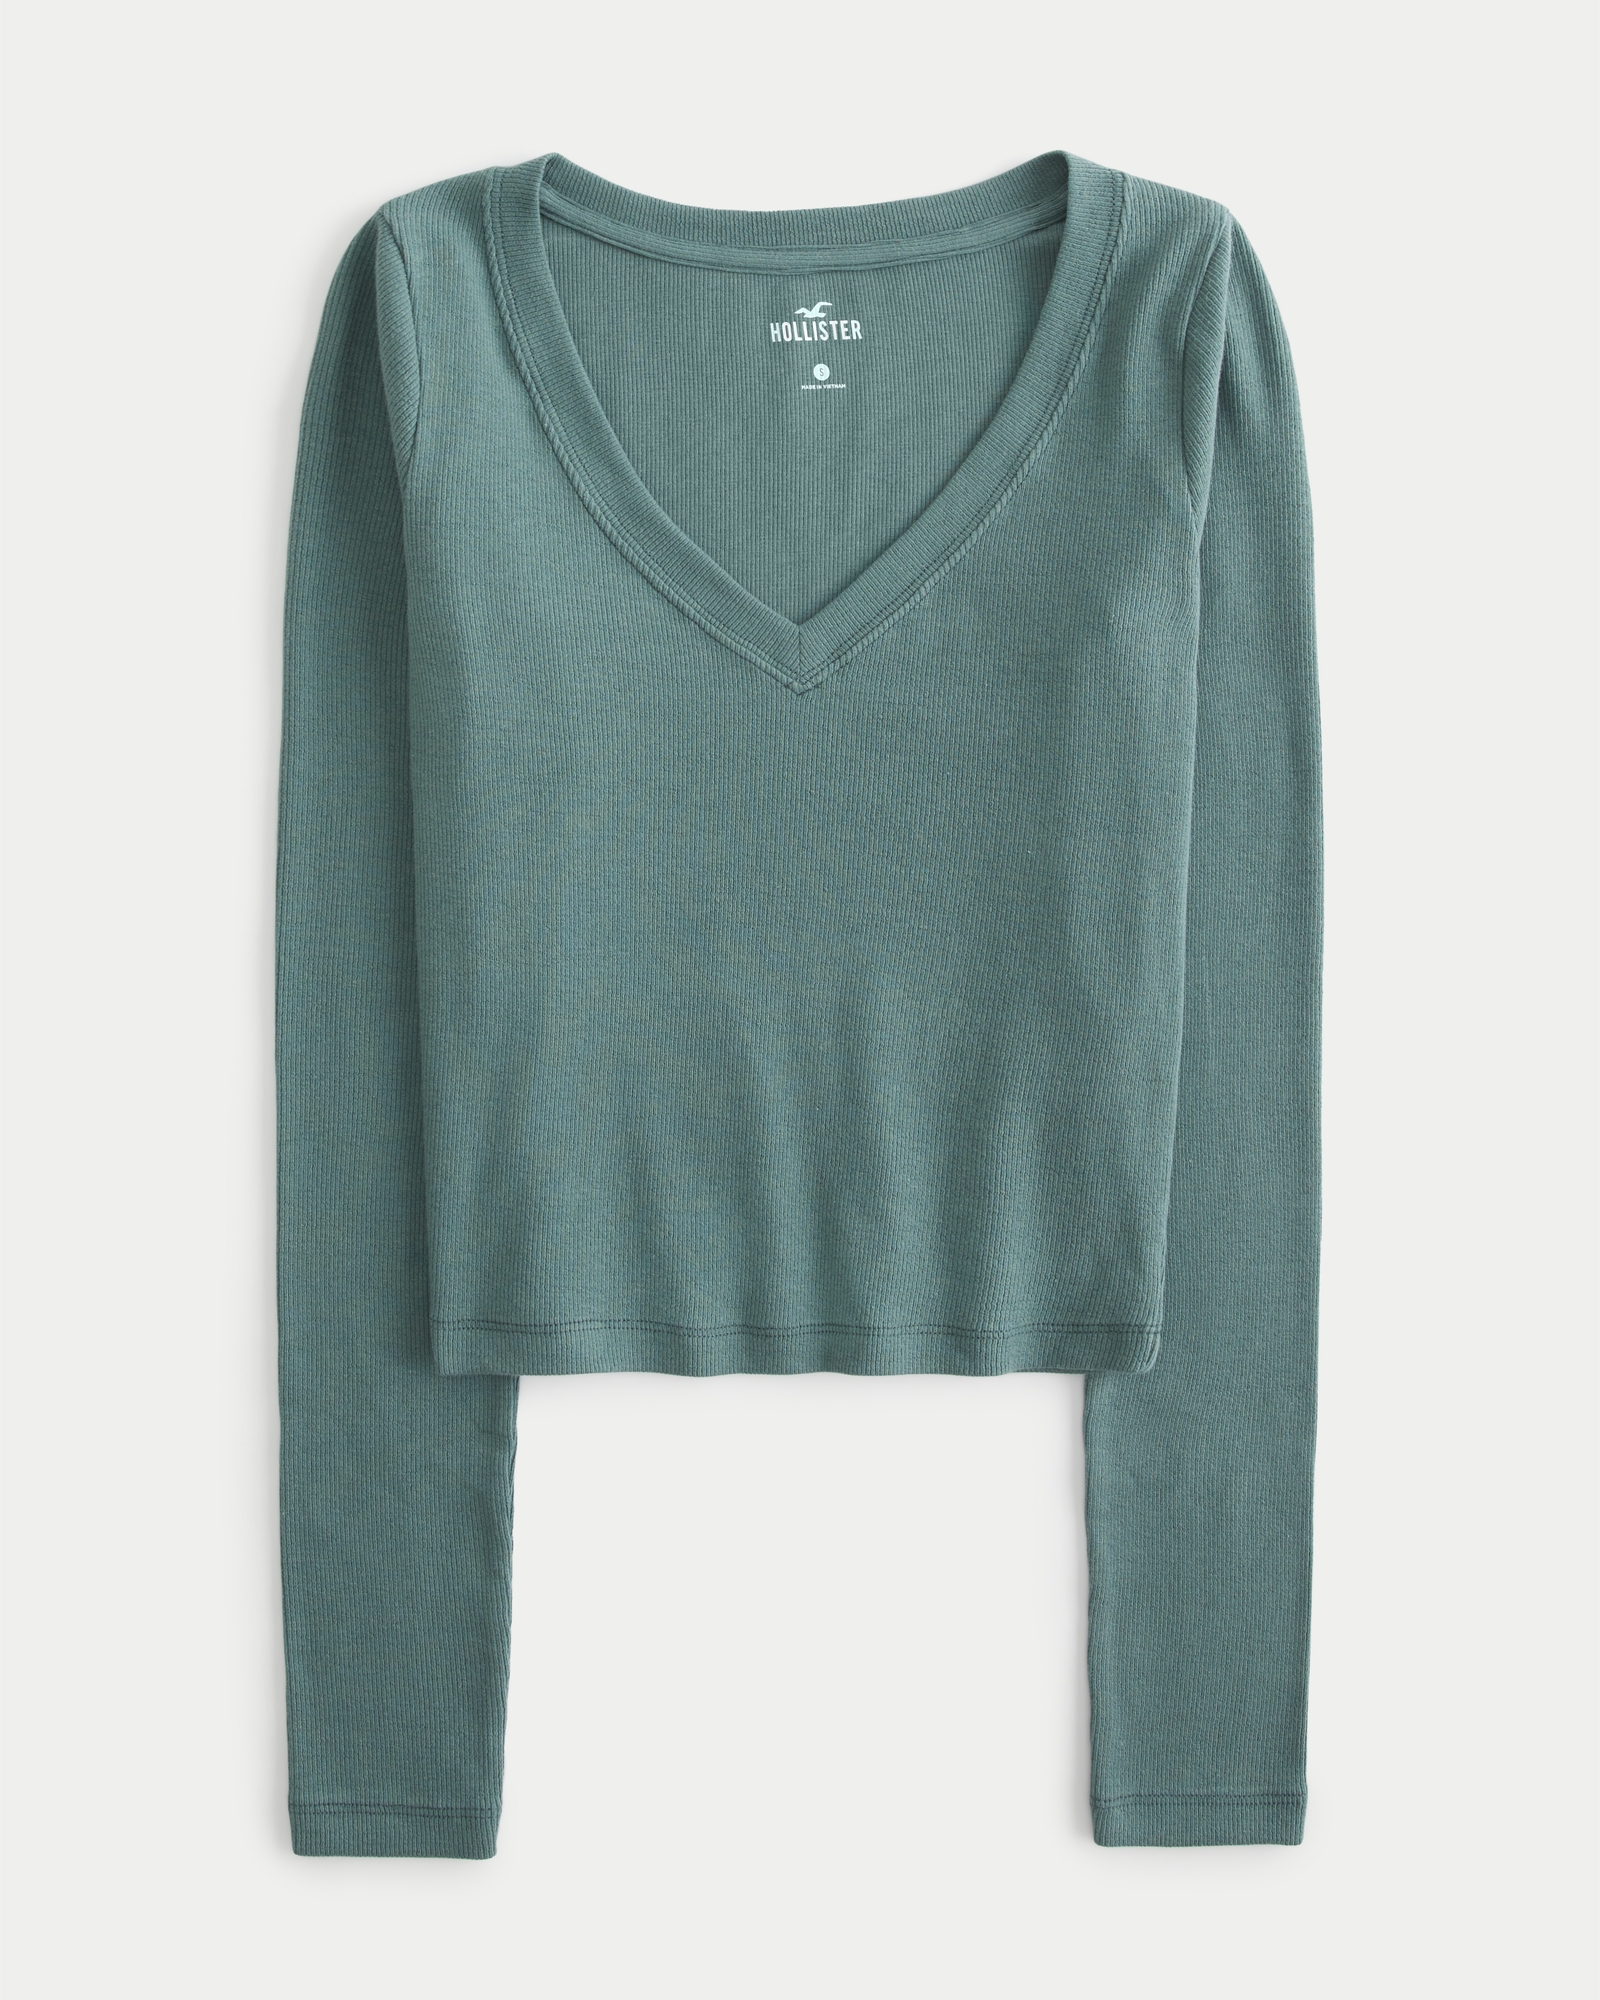 Hollister Women’s Long Sleeve Shirt Green/White/Gray Top Size Medium